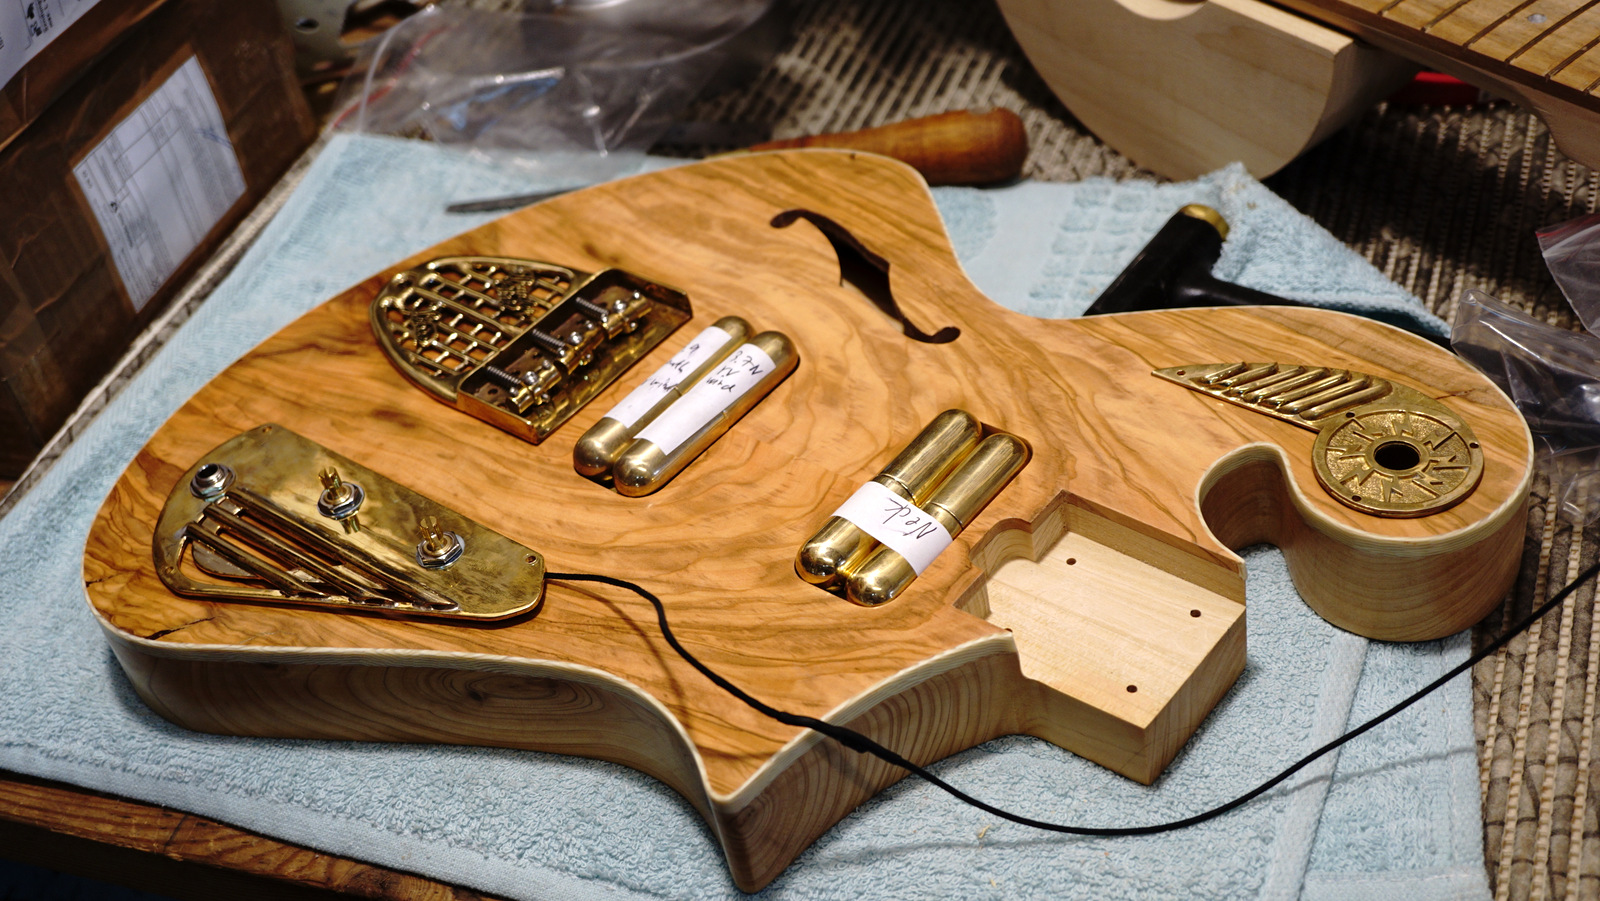 The new upcoming Methuselah Ancient Olive Custom Guitar